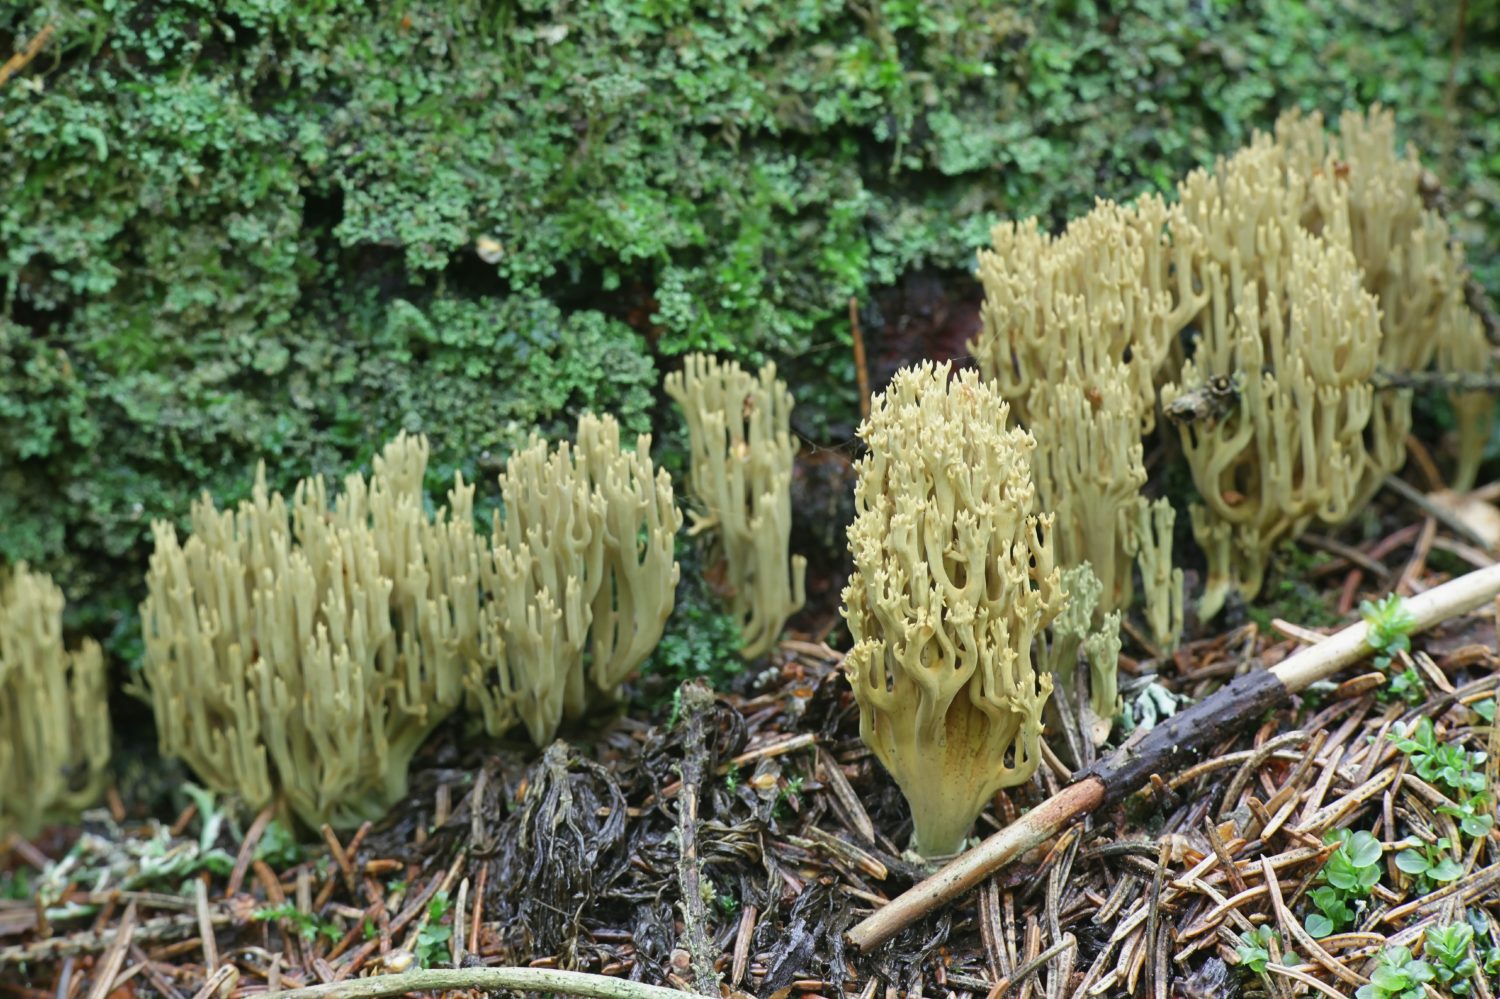 Ramaria abietina, conosciuta come il corallo verde, fungo corallo selvatico originario della Finlandia